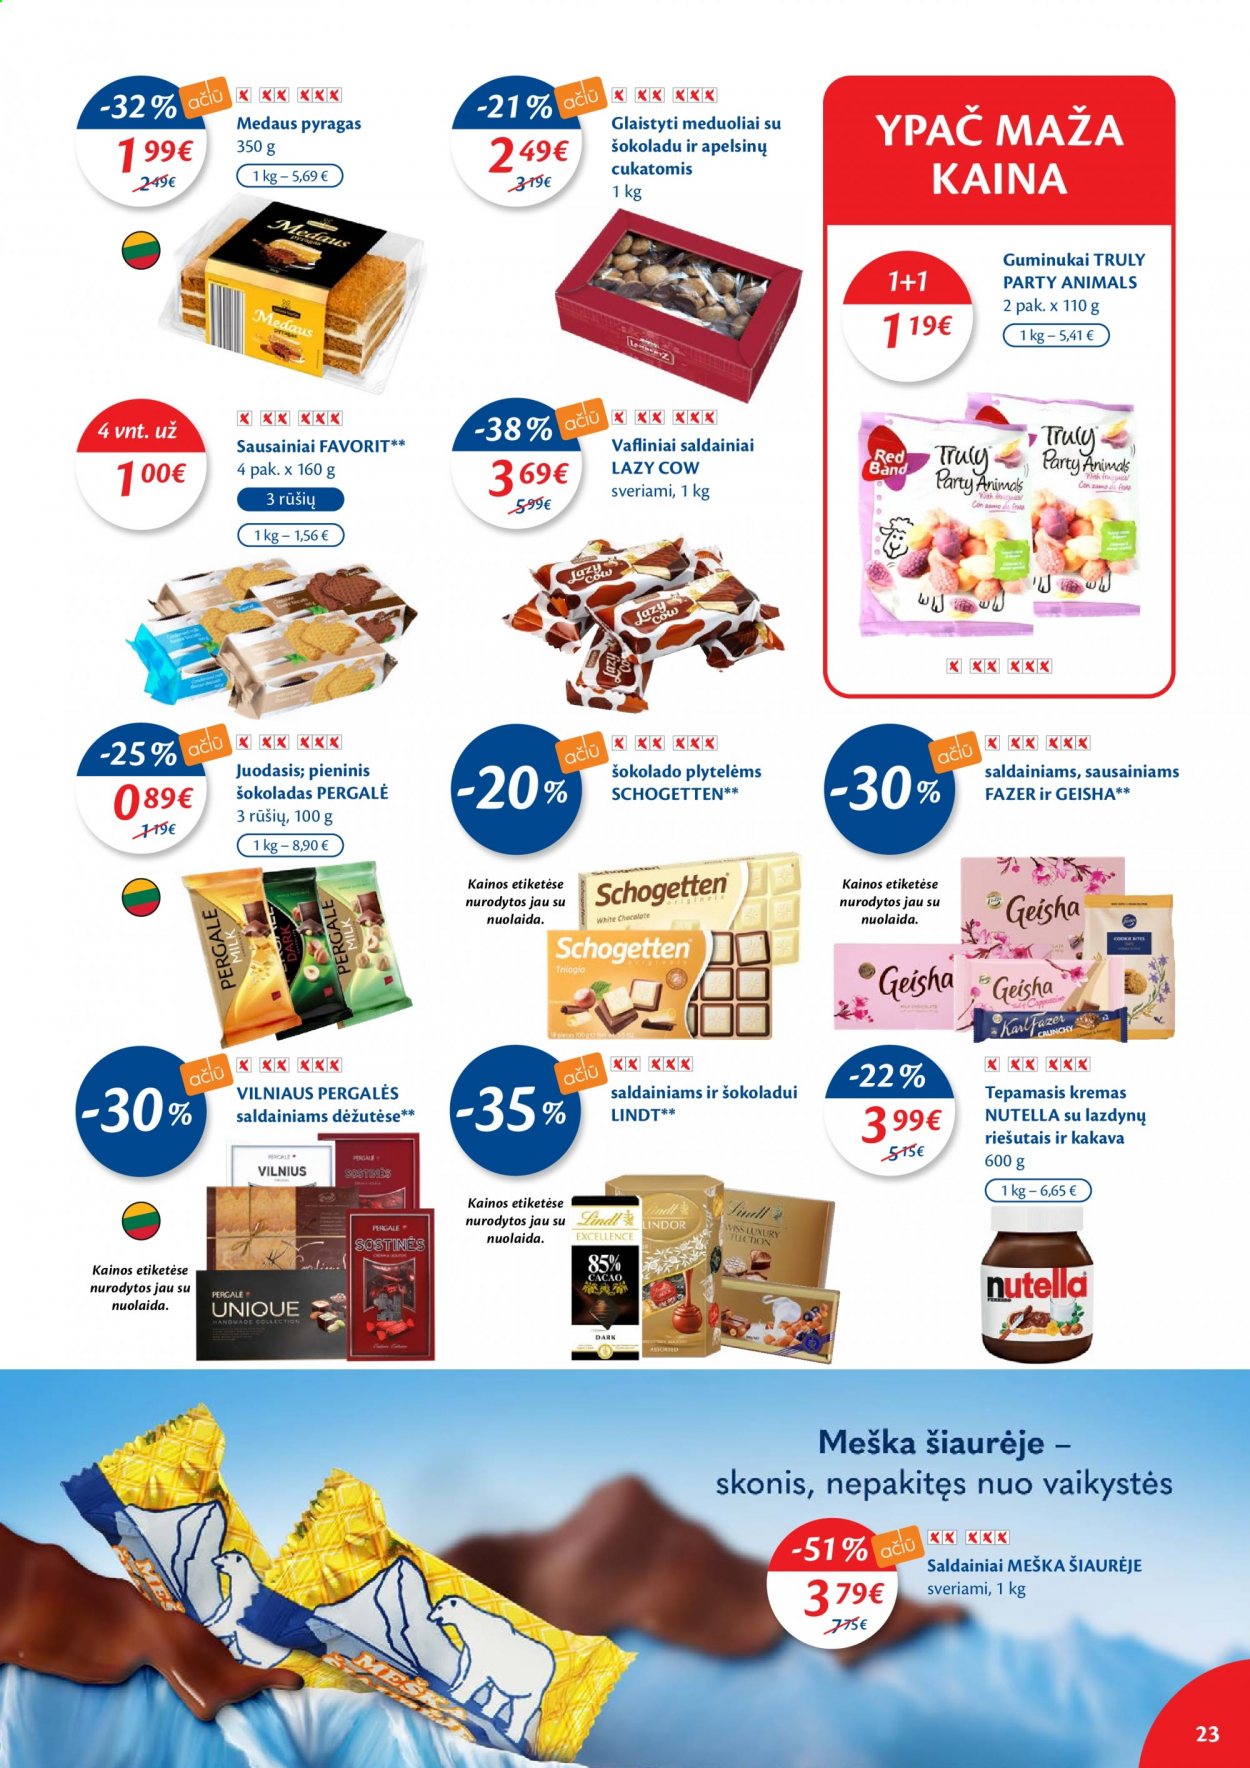 thumbnail - „Maxima“ leidinys - 2021 06 08 - 2021 06 14 - Išpardavimų produktai - pyragas, Meška Šiaurėje, saldainiai, sausainiai, Schogetten, šokoladas, Nutella, kremas. 23 puslapis.